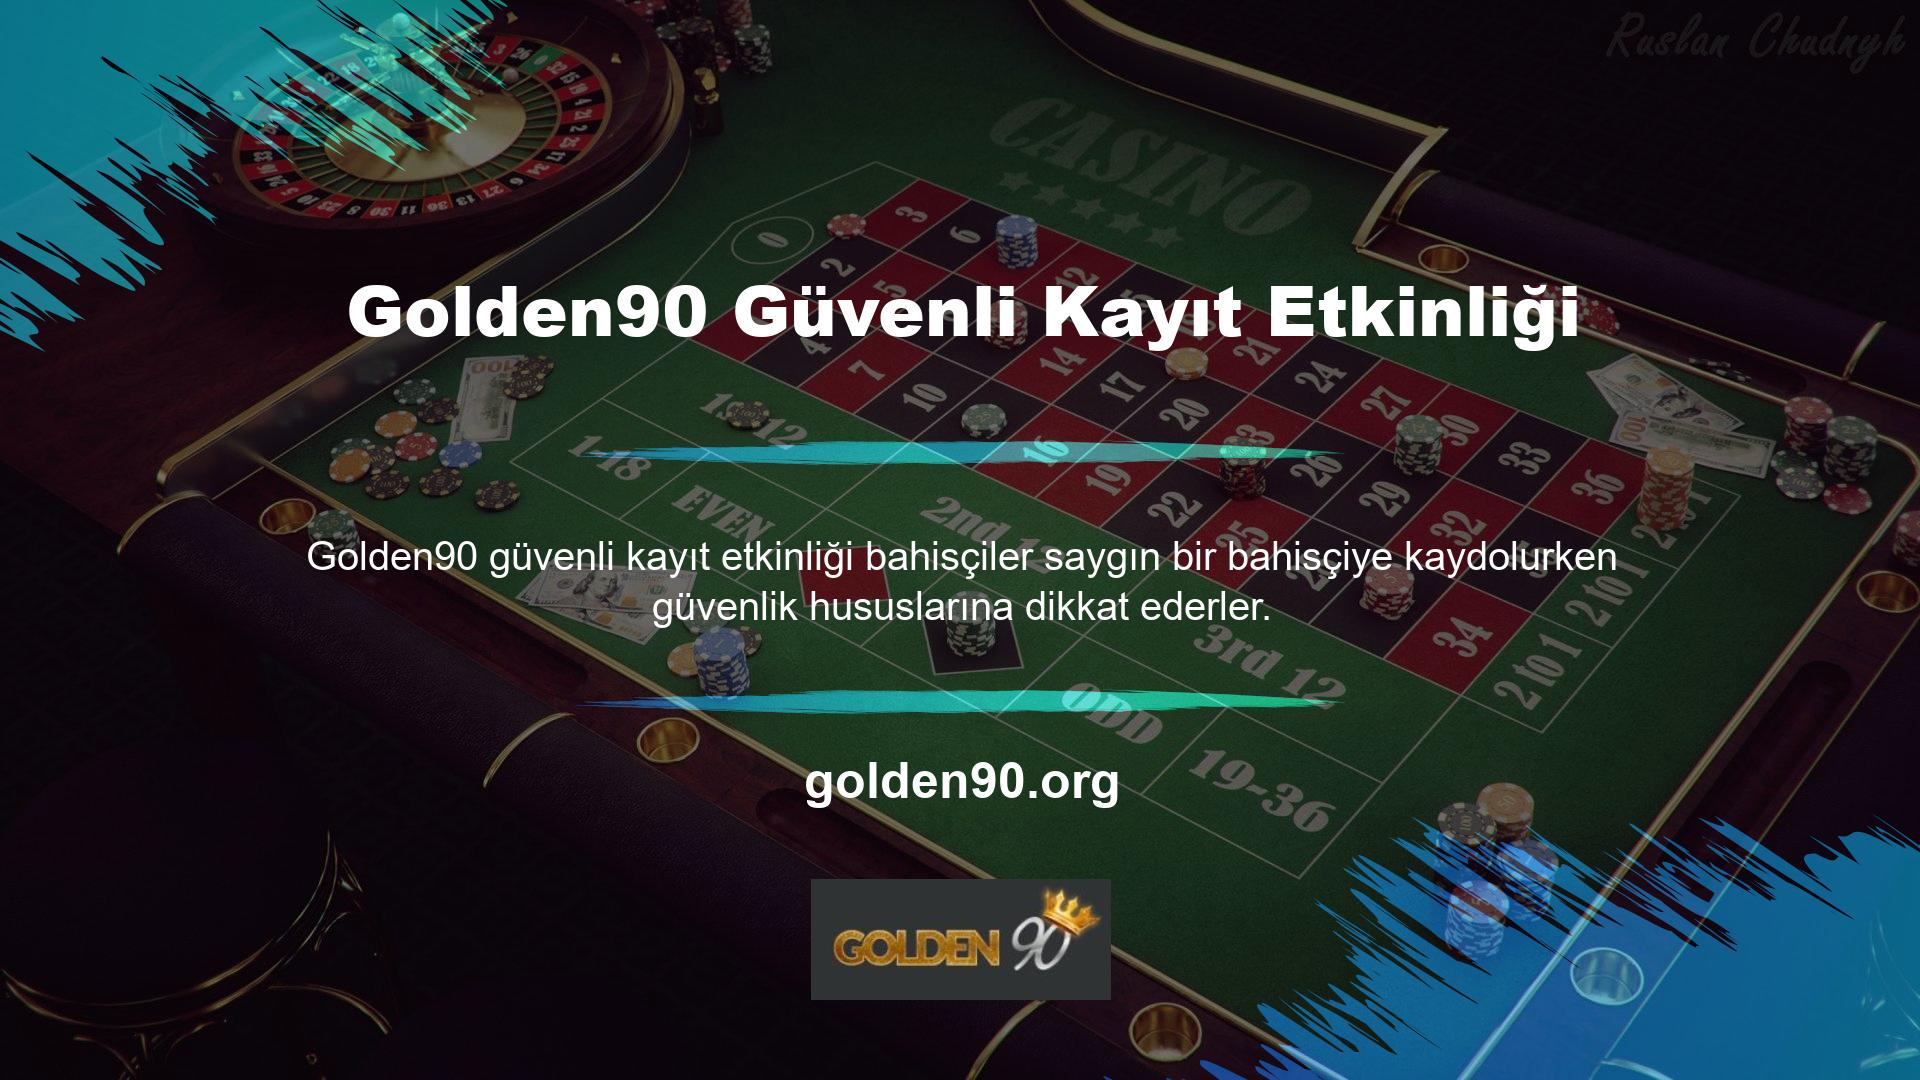 Bu bakımdan Golden90 güvenli kayıt işi, ticari hizmetlerinin tüm yönleriyle gurur duymaktadır